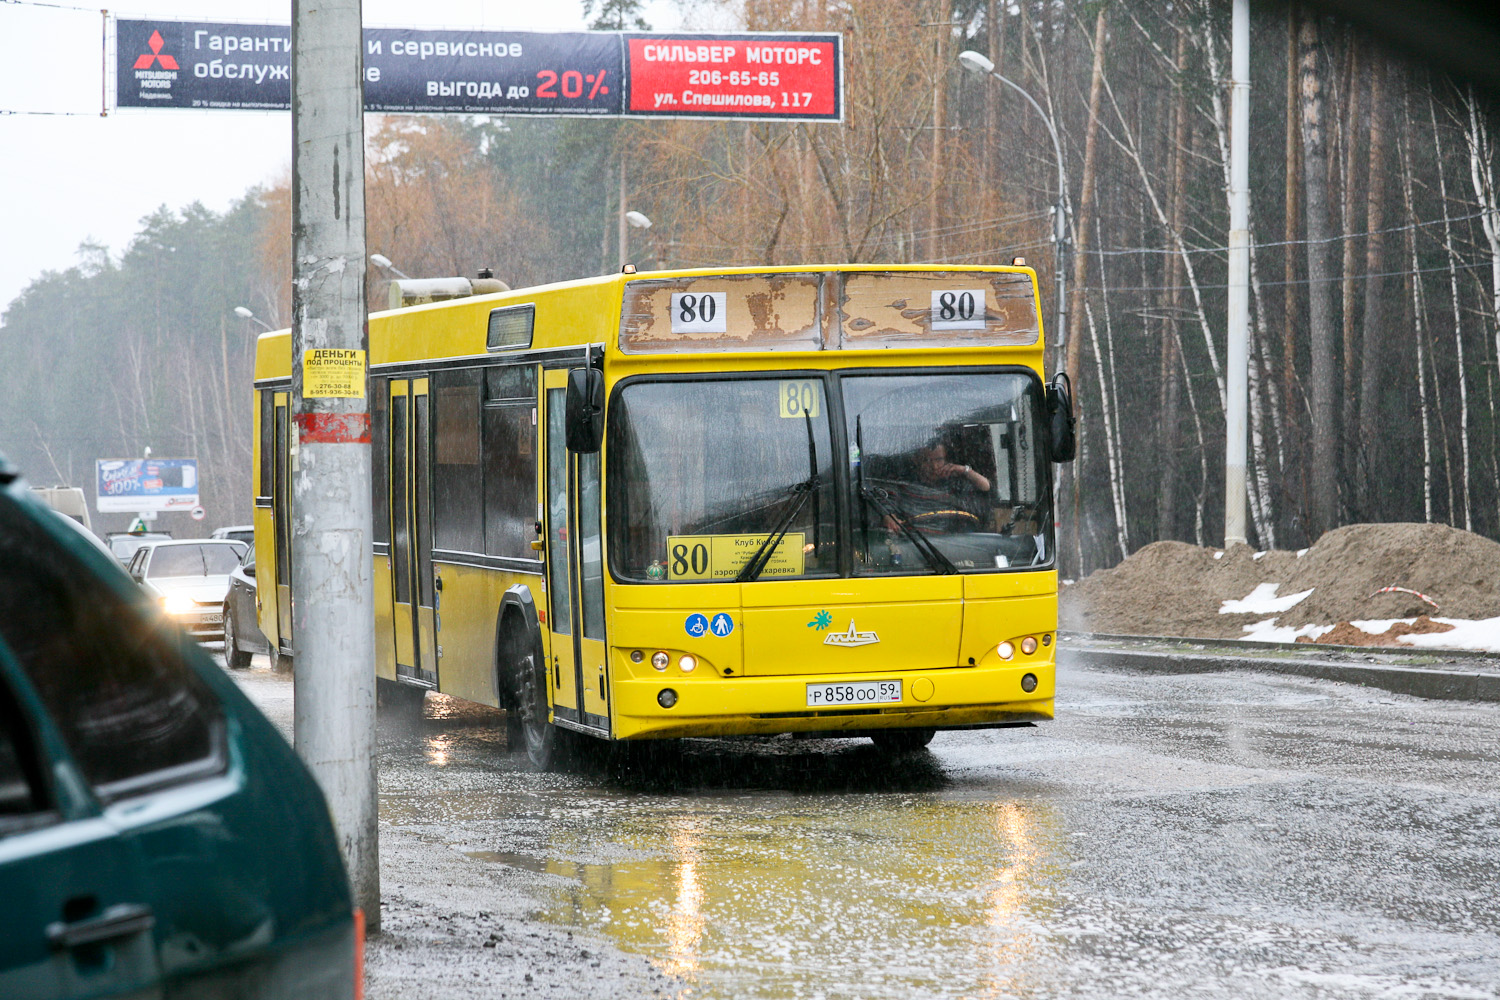 Четыре автобусных маршрута в Перми изменят расписание по просьбам пассажиров